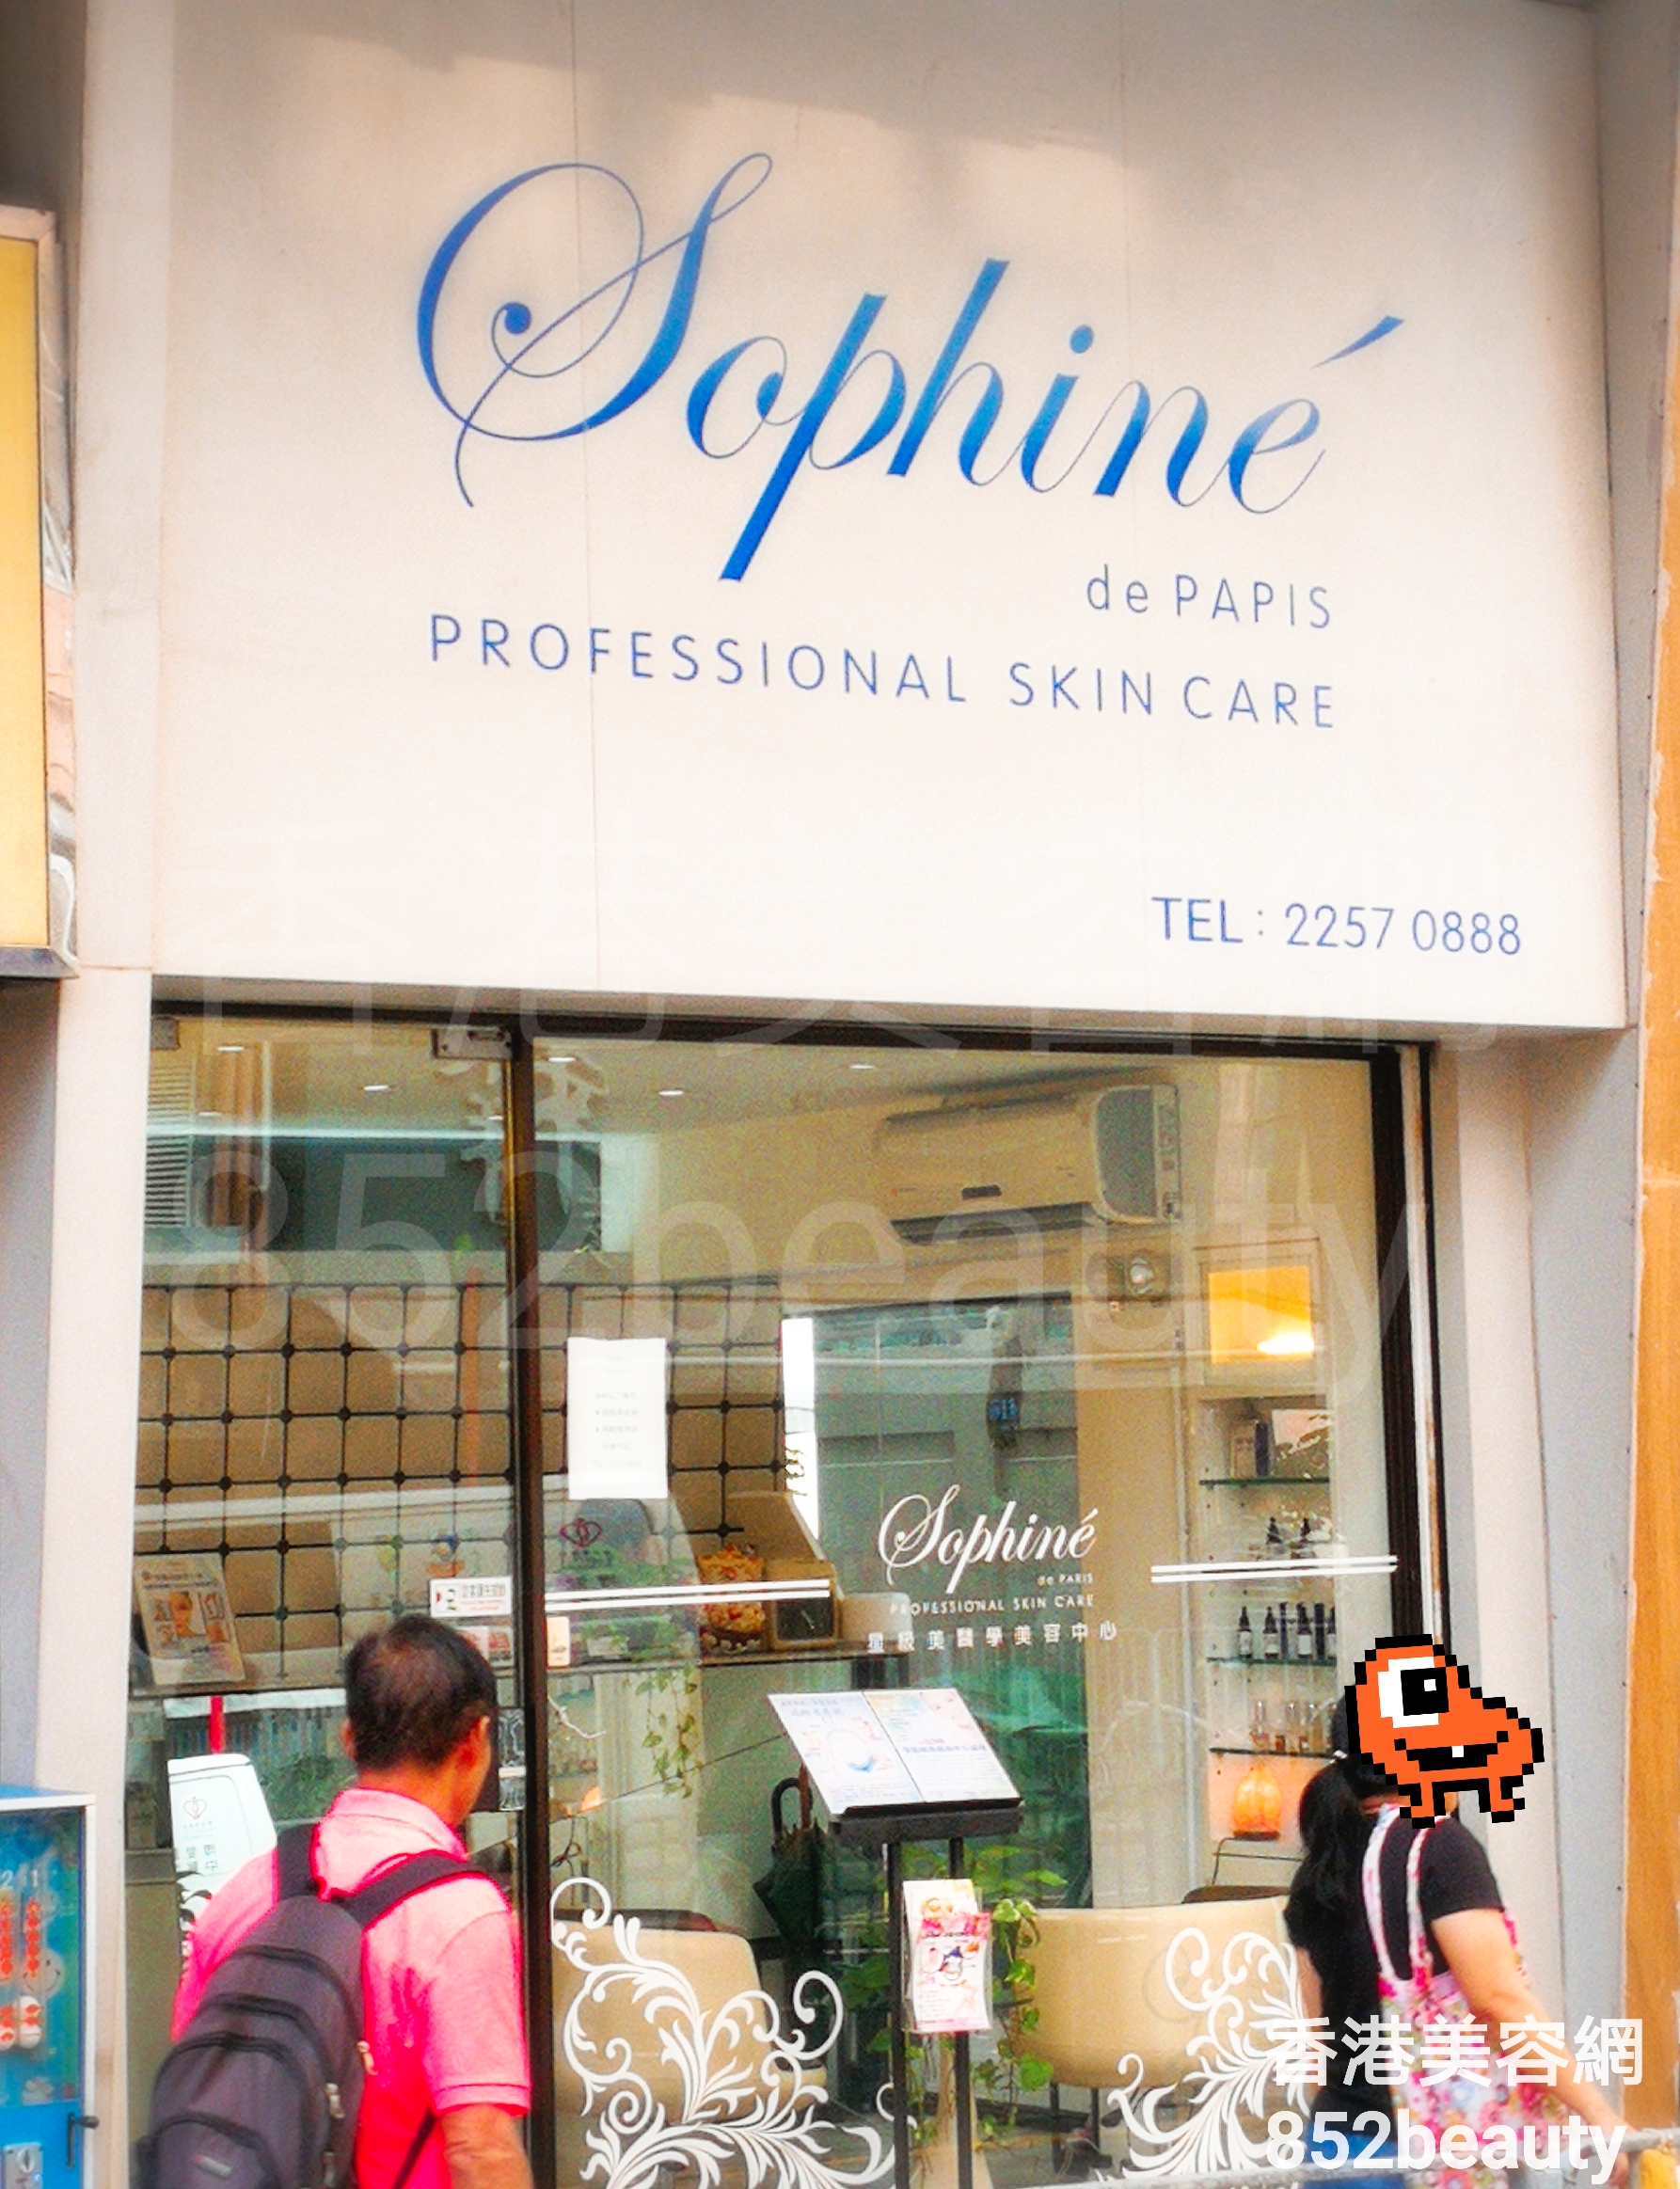 : Sophine de PARIS 星級美醫學美容中心